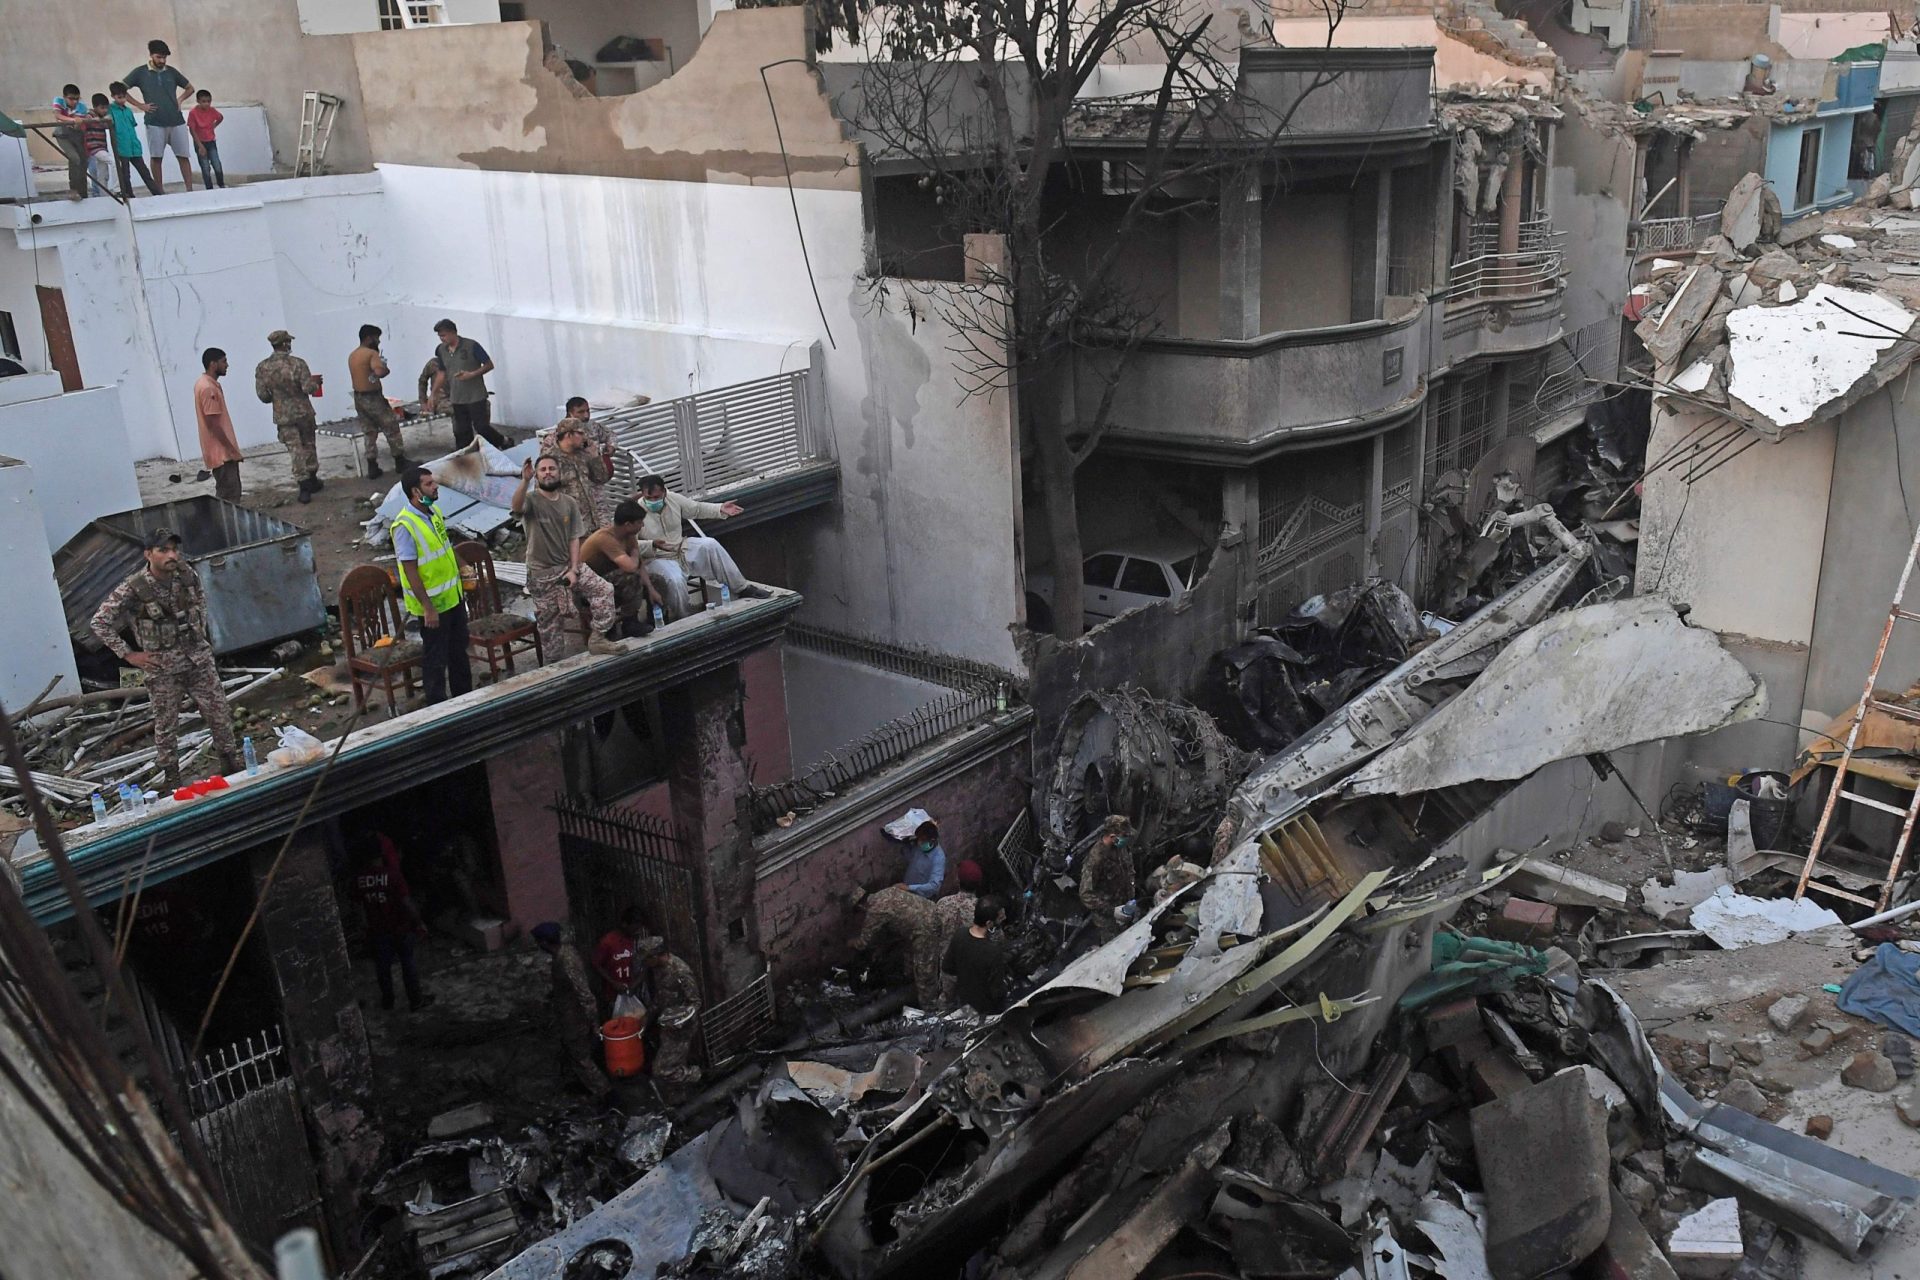 Vídeo mostra cenário de destruição após queda de avião no Paquistão